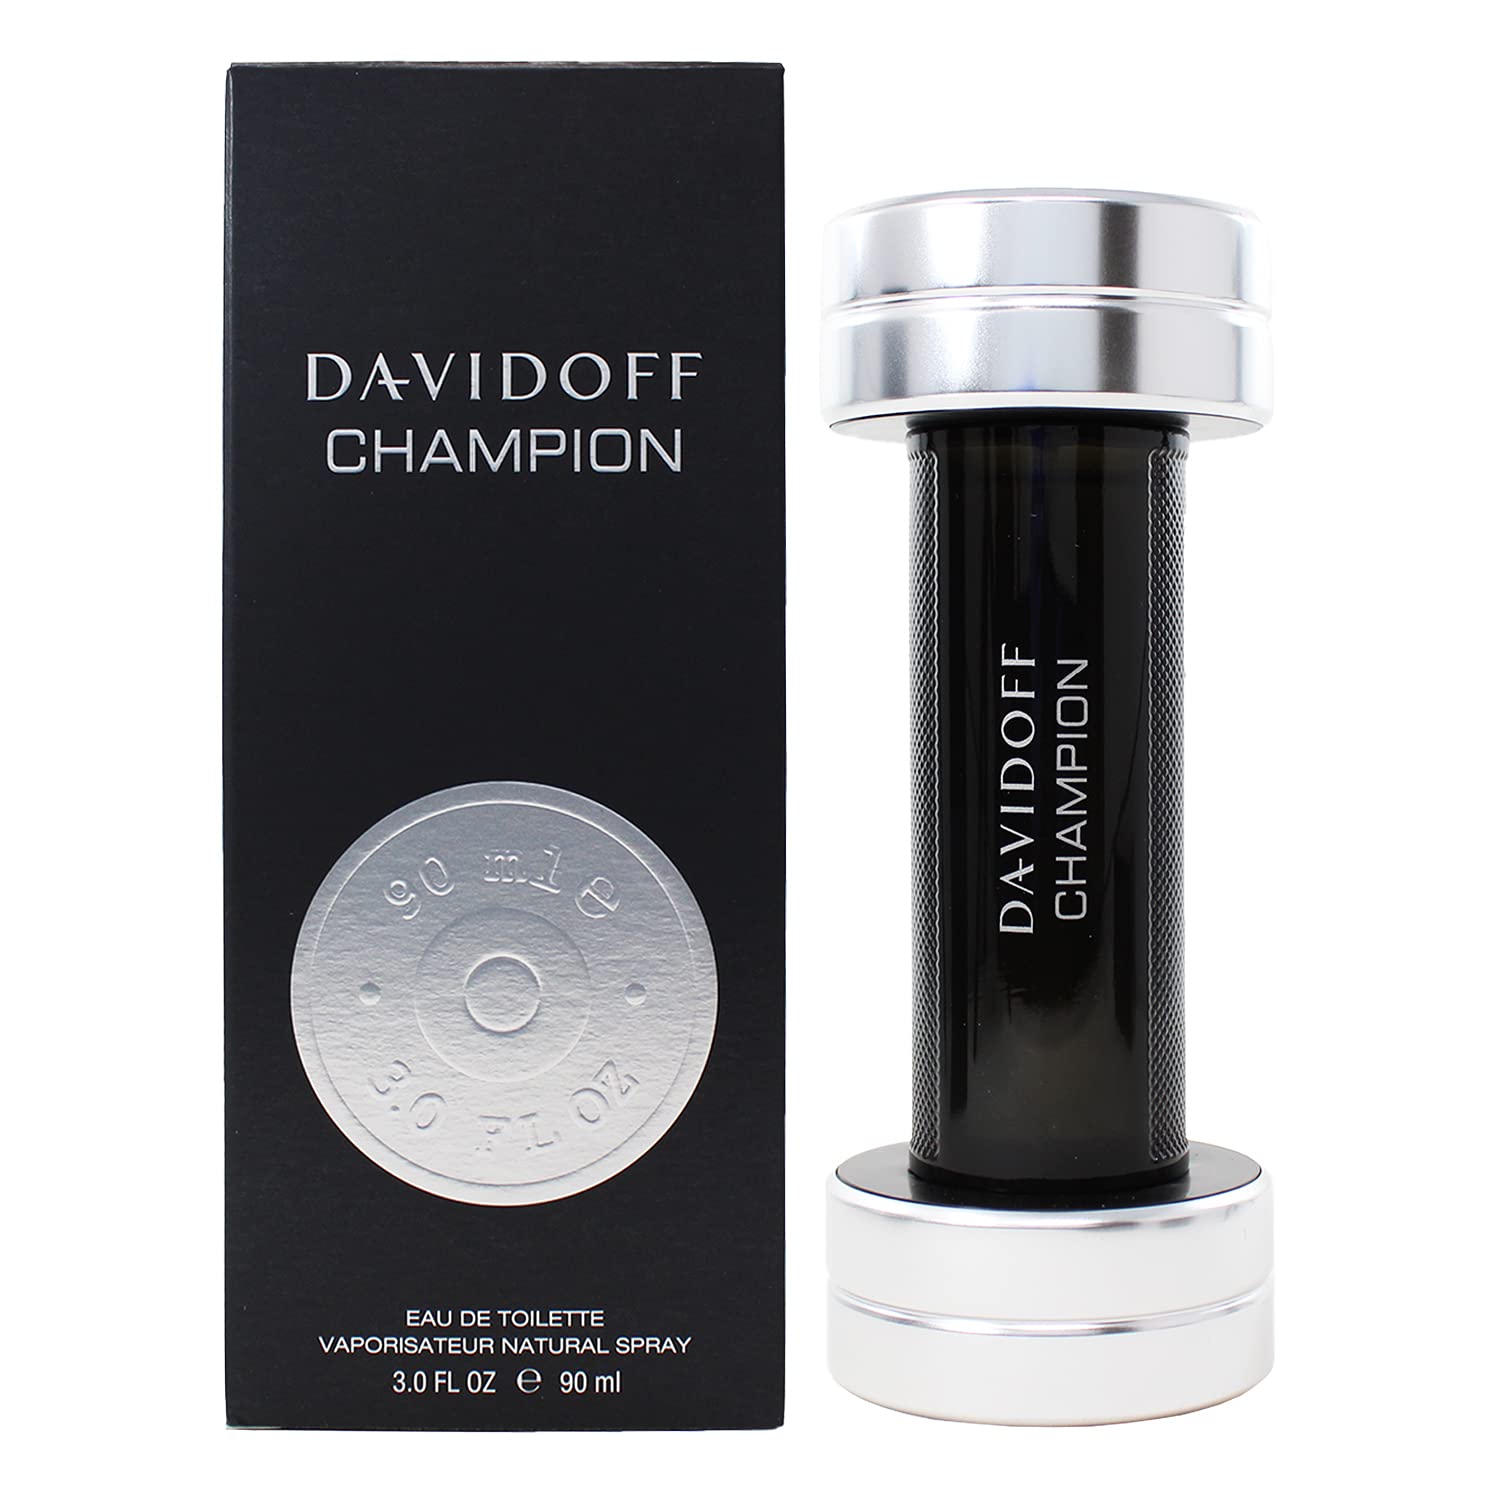 DAVIDOFF CHAMPION 3.0 EDT M - DAVIDOFF